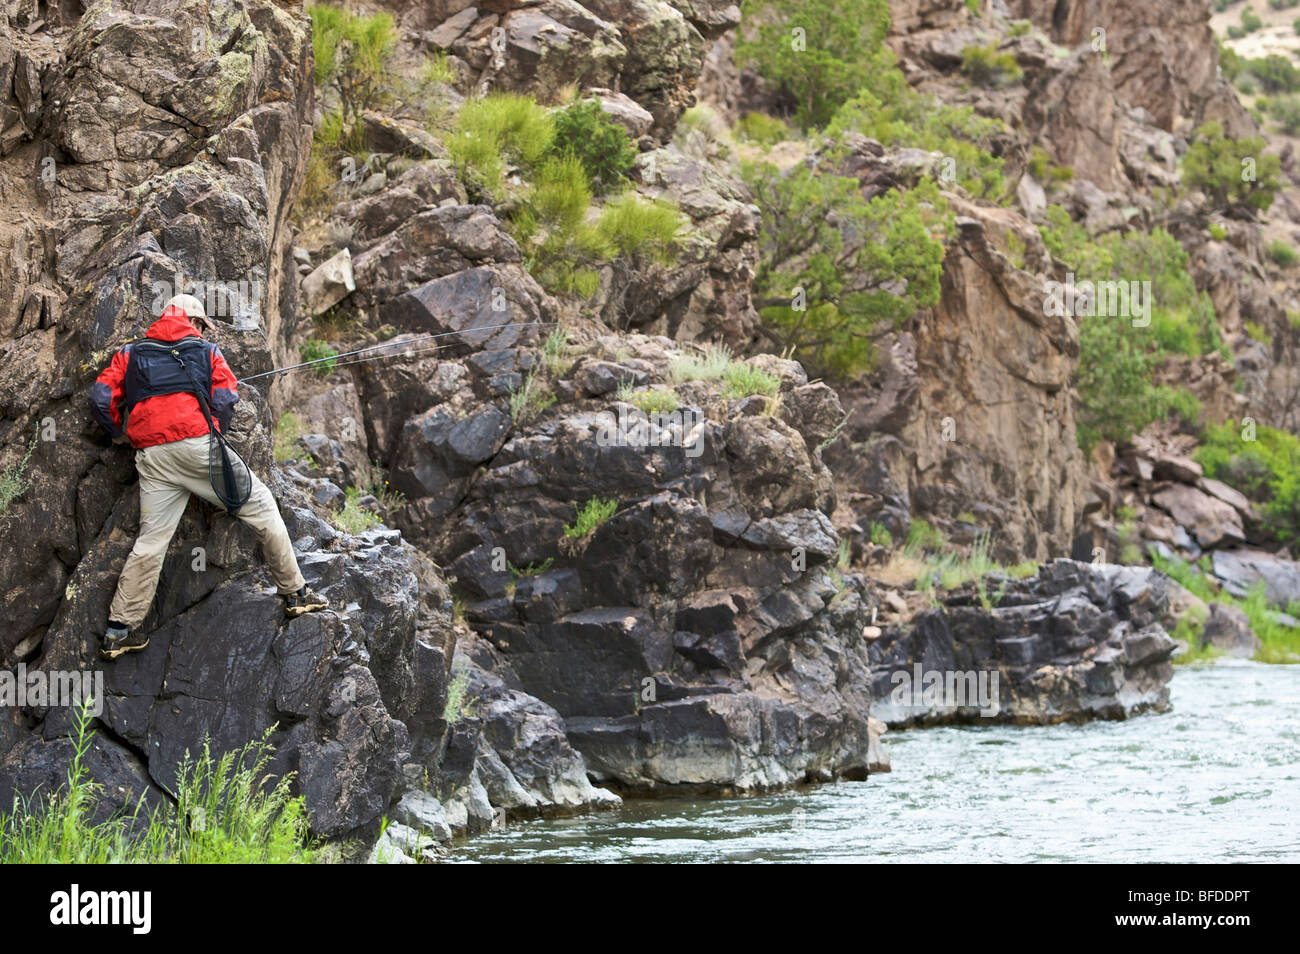 Un pescatore si arrampica su un banco roccioso per evitare di acque profonde sulle rive di un fiume. Foto Stock